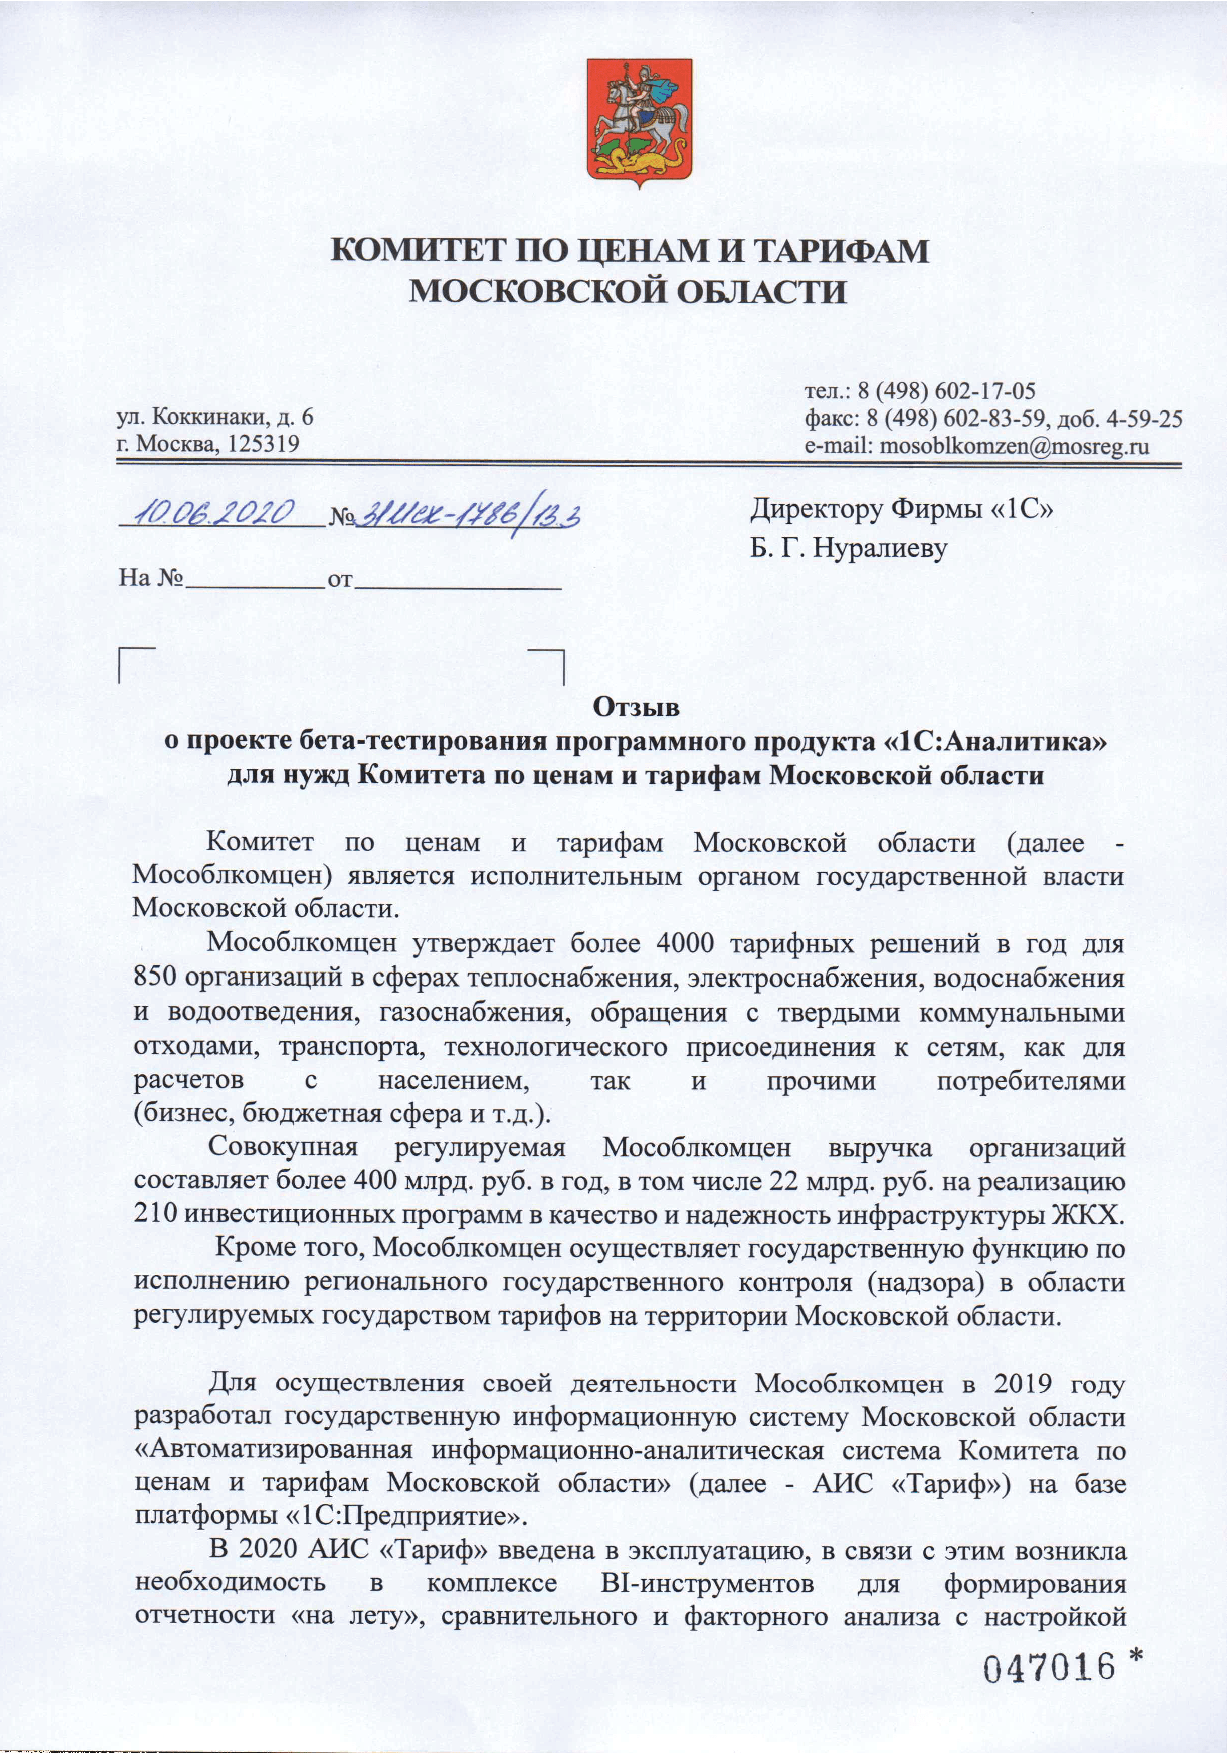 Бета-тестирование продукта «1С:Аналитика» в Комитете по ценам и тарифам Московской области